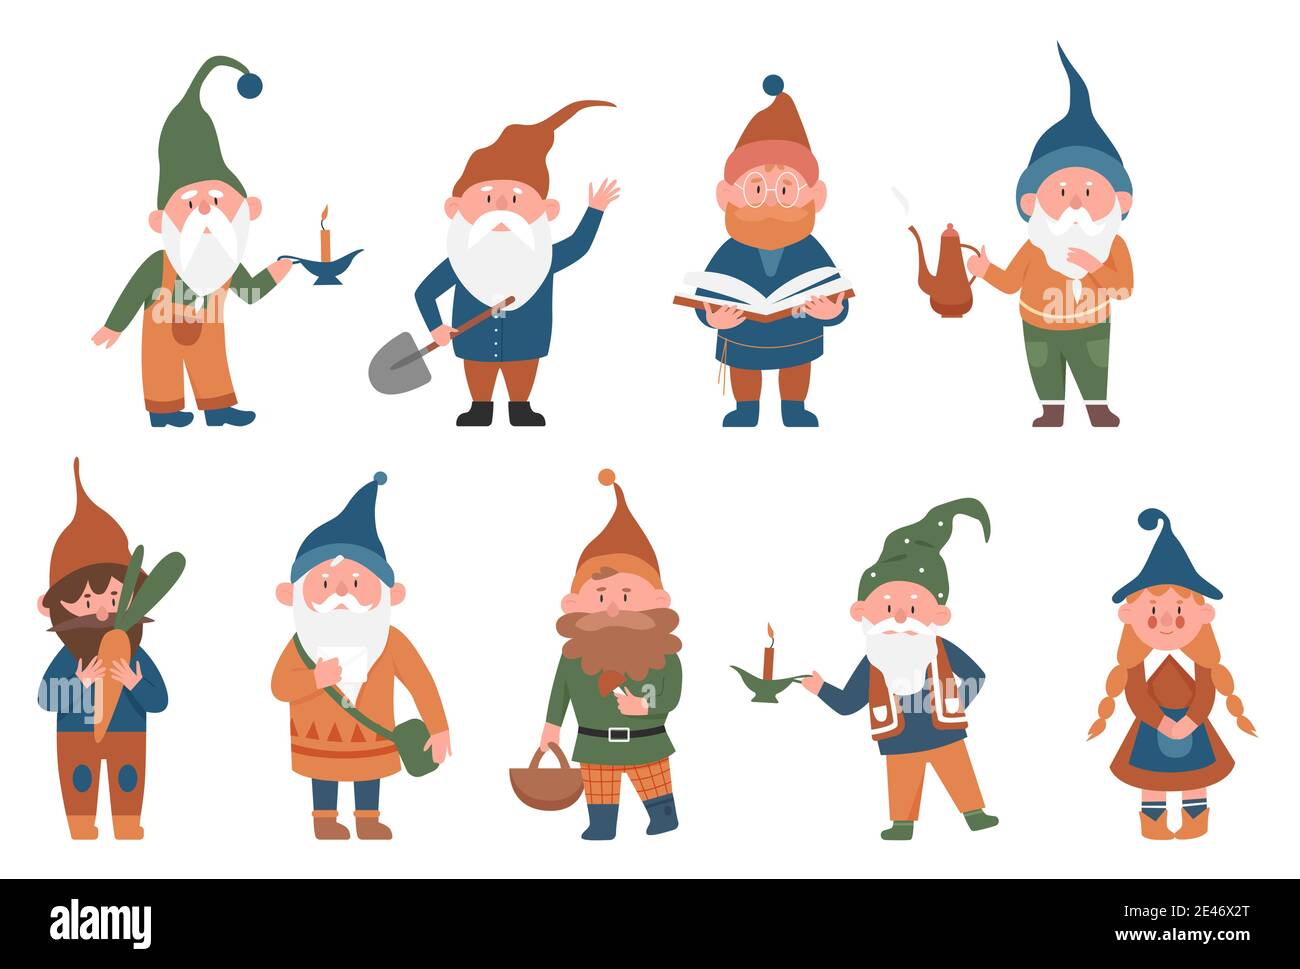 Niedliche Märchen Gnome Vektor Illustration Set. Cartoon lustige Gnome oder Zwerg männliche Fee Charakter in verschiedenen Posen stehen, hält Pilz, arbeiten im Garten, Buch auf weiß isoliert lesen Stock Vektor